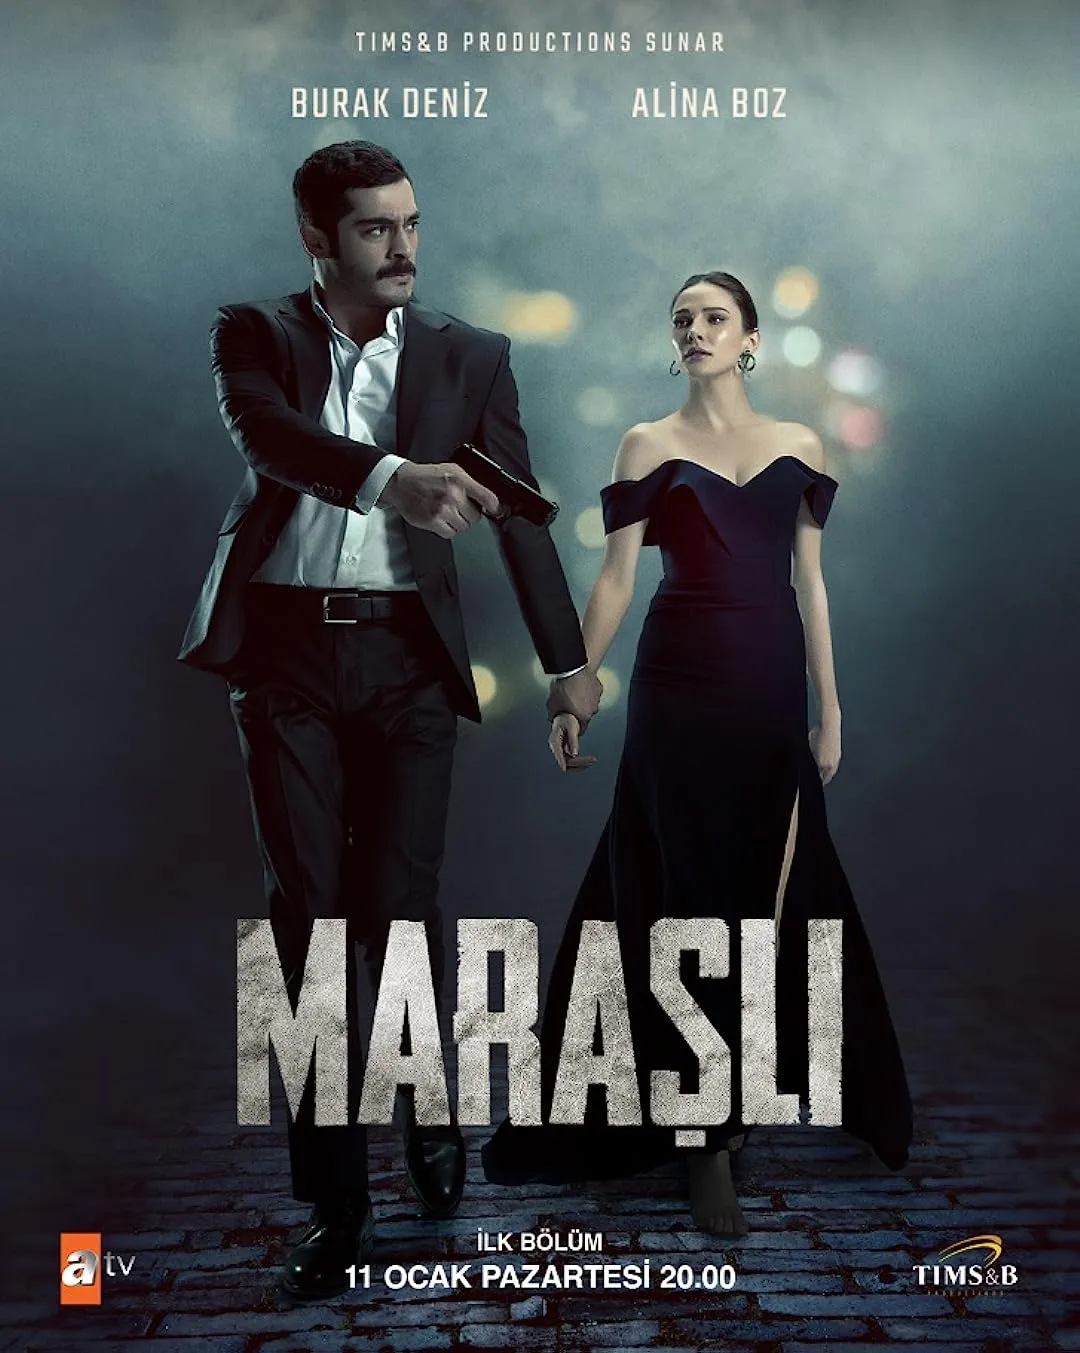 Marasli | Pazeste-ma de mine! online subtitrat in romana